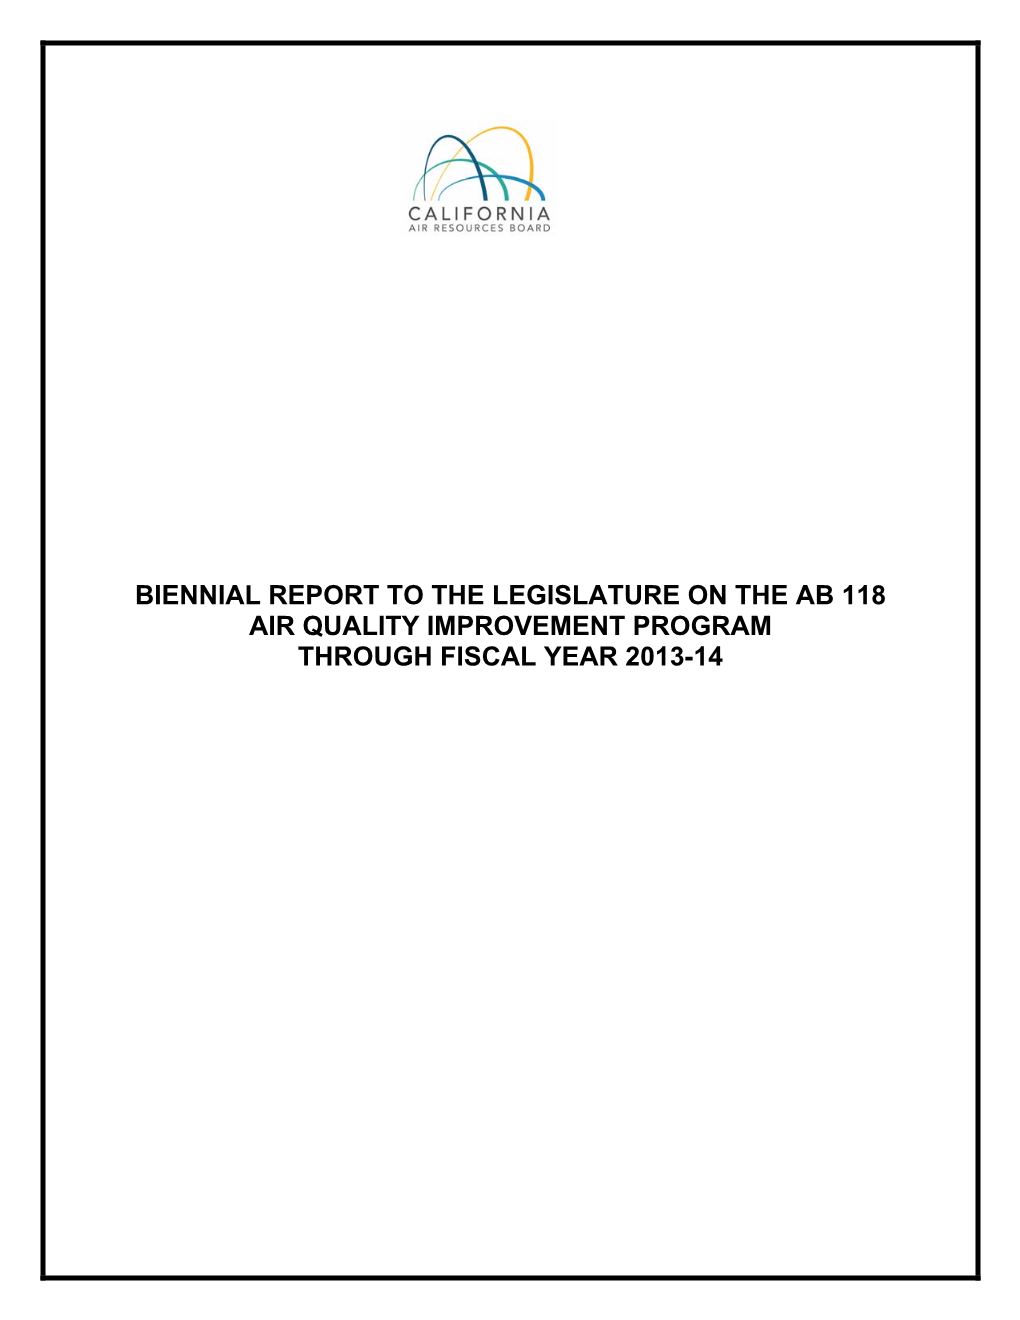 AB 118 Air Quality Improvement Program AQIP Fiscal Year 2013-14